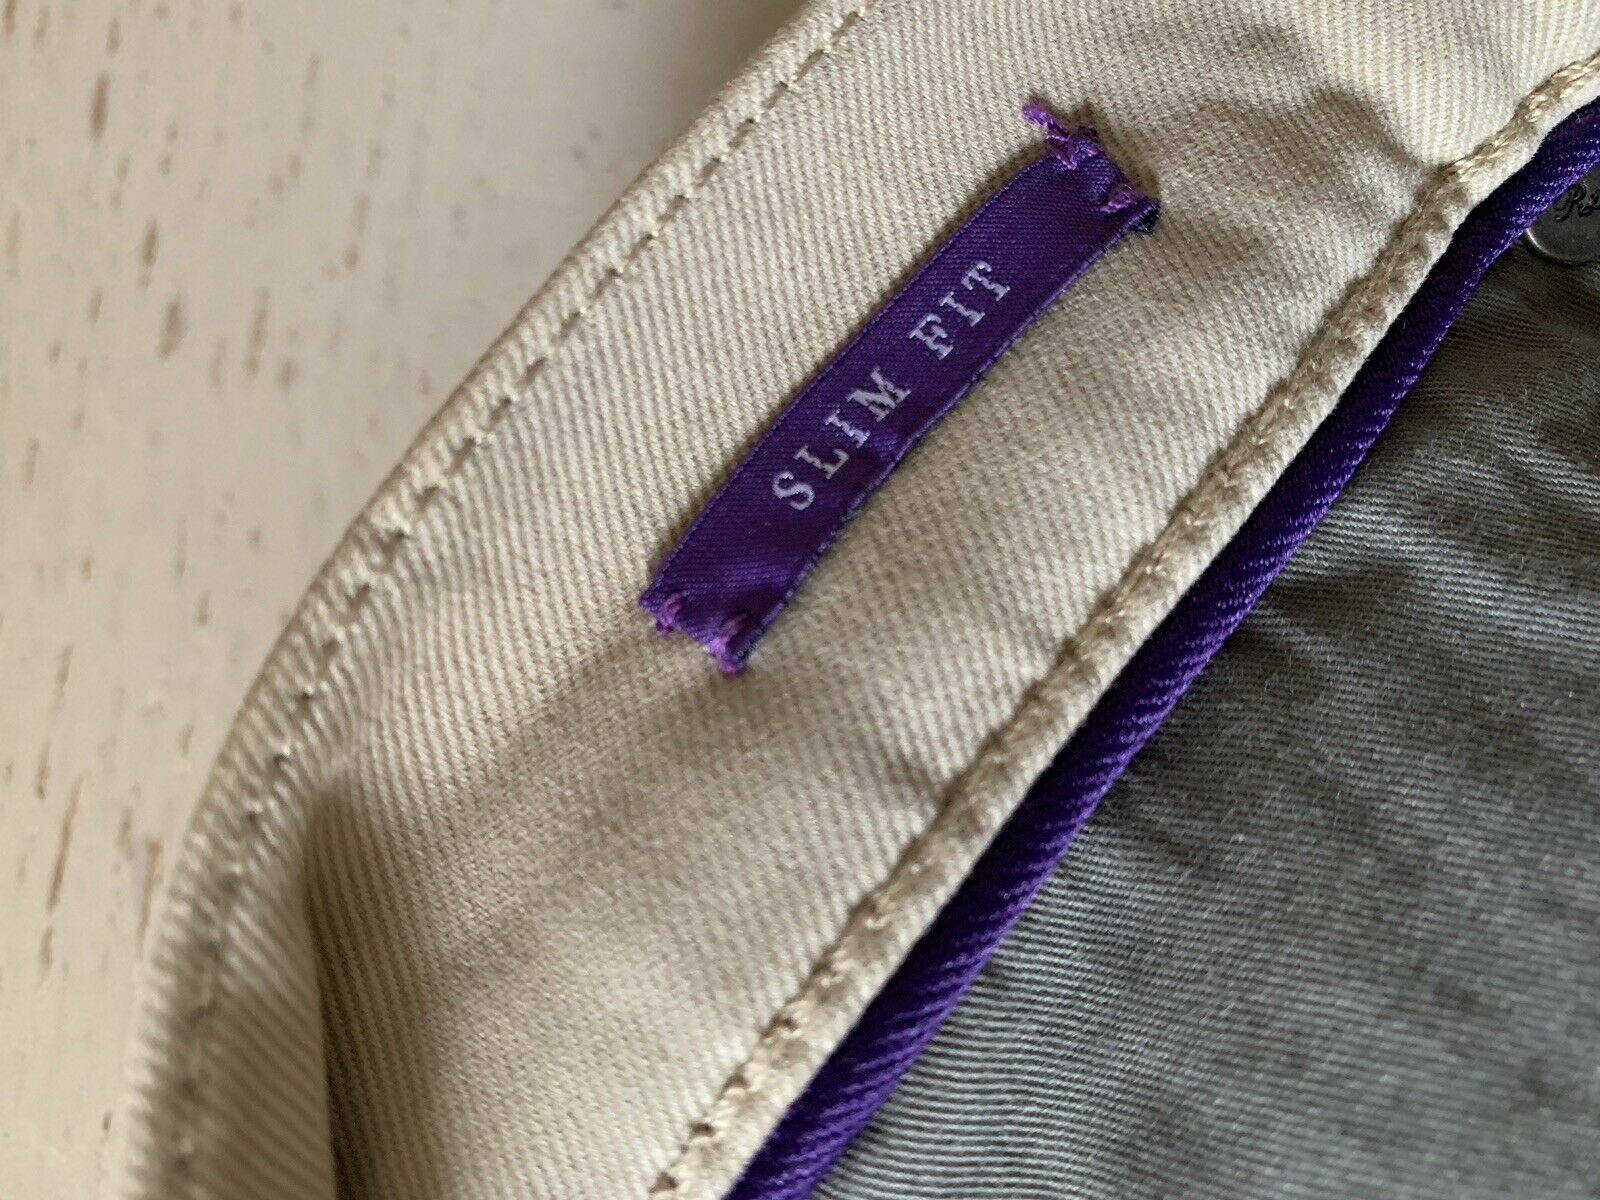 Neu mit Etikett: 395 $ Ralph Lauren Purple Label Herrenjeanshose Slim Fit Beige 34/32L US